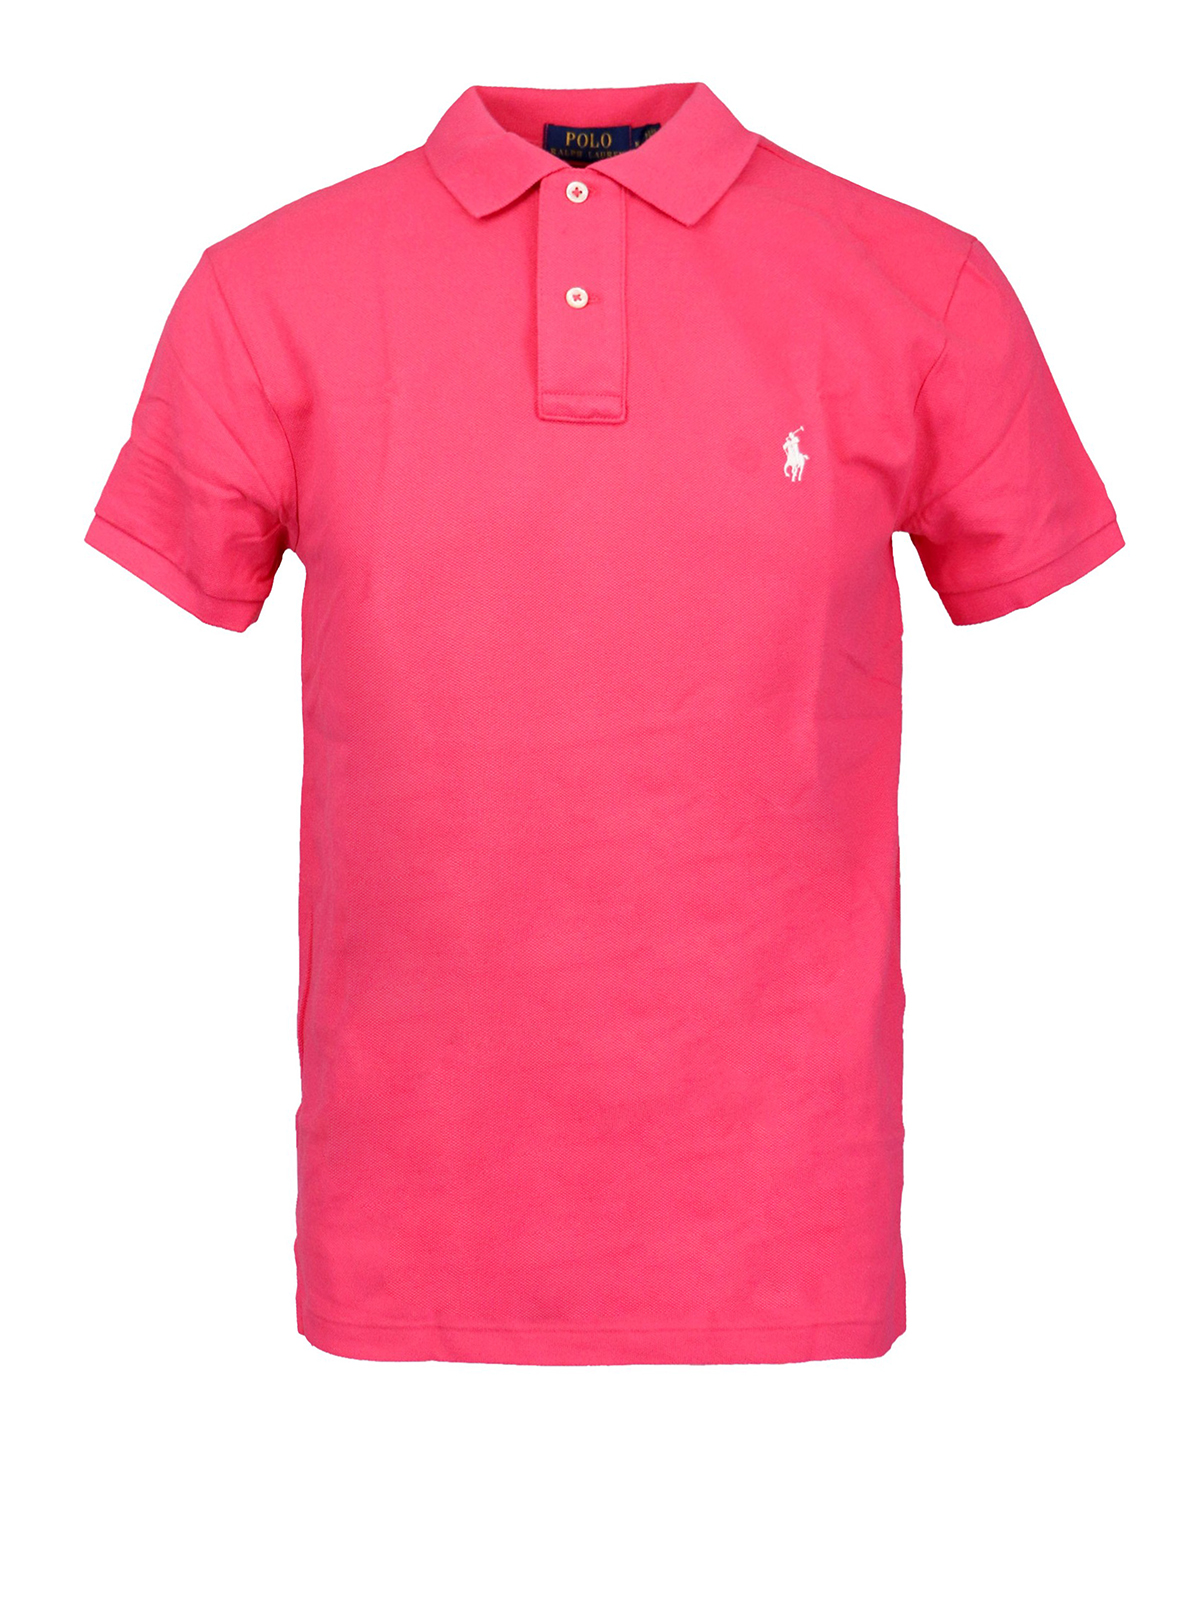 Polo Ralph Lauren Pink Pique Cotton Polo Shirt